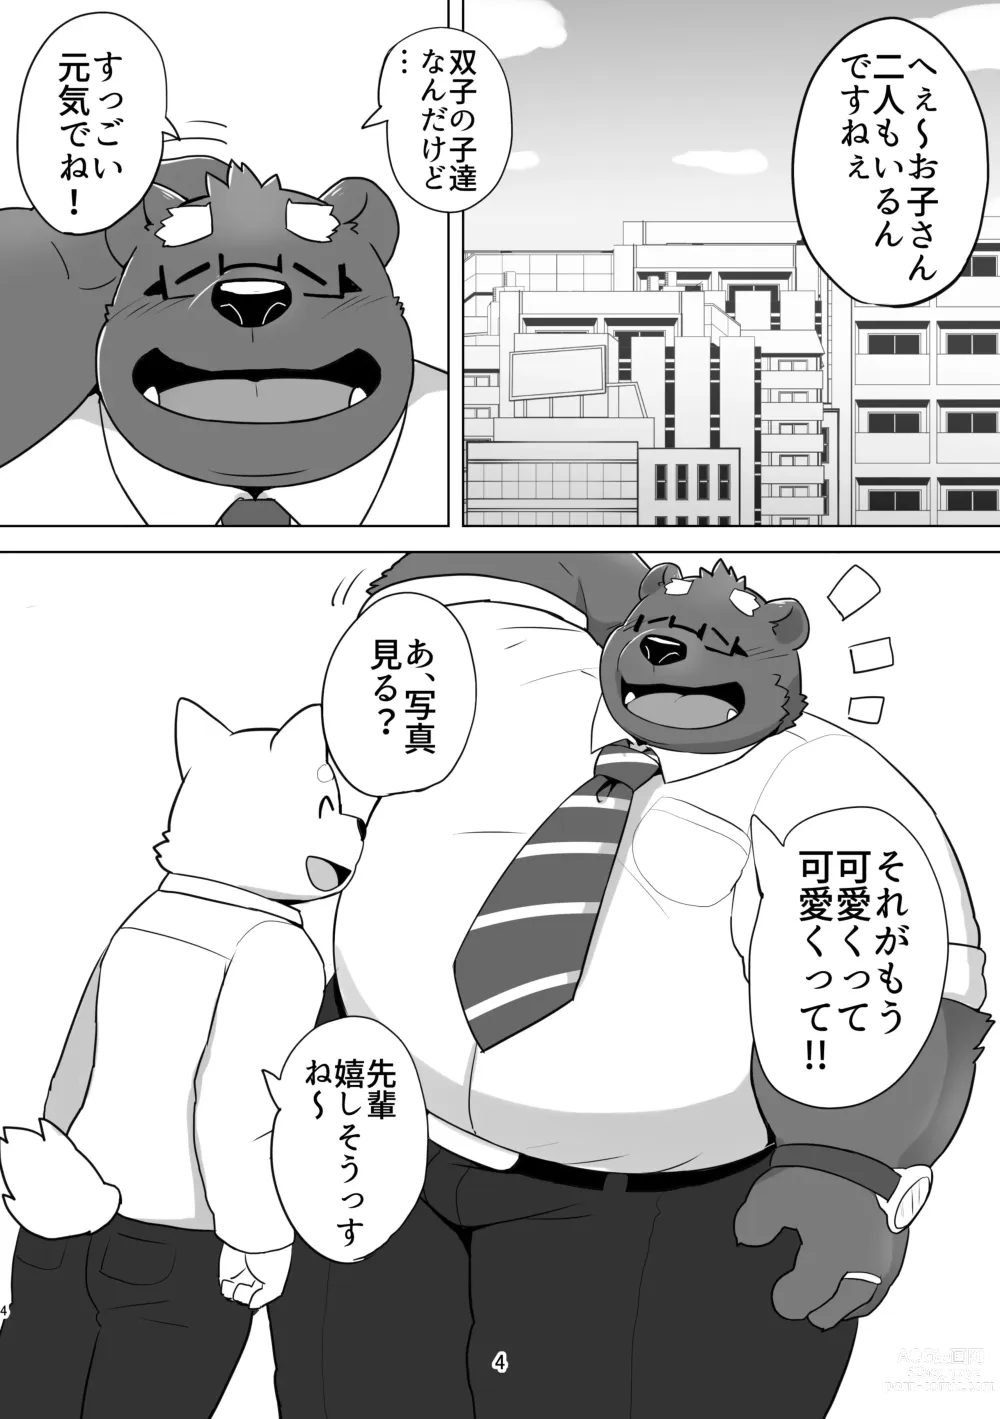 Page 4 of doujinshi KUMAPAPA 1